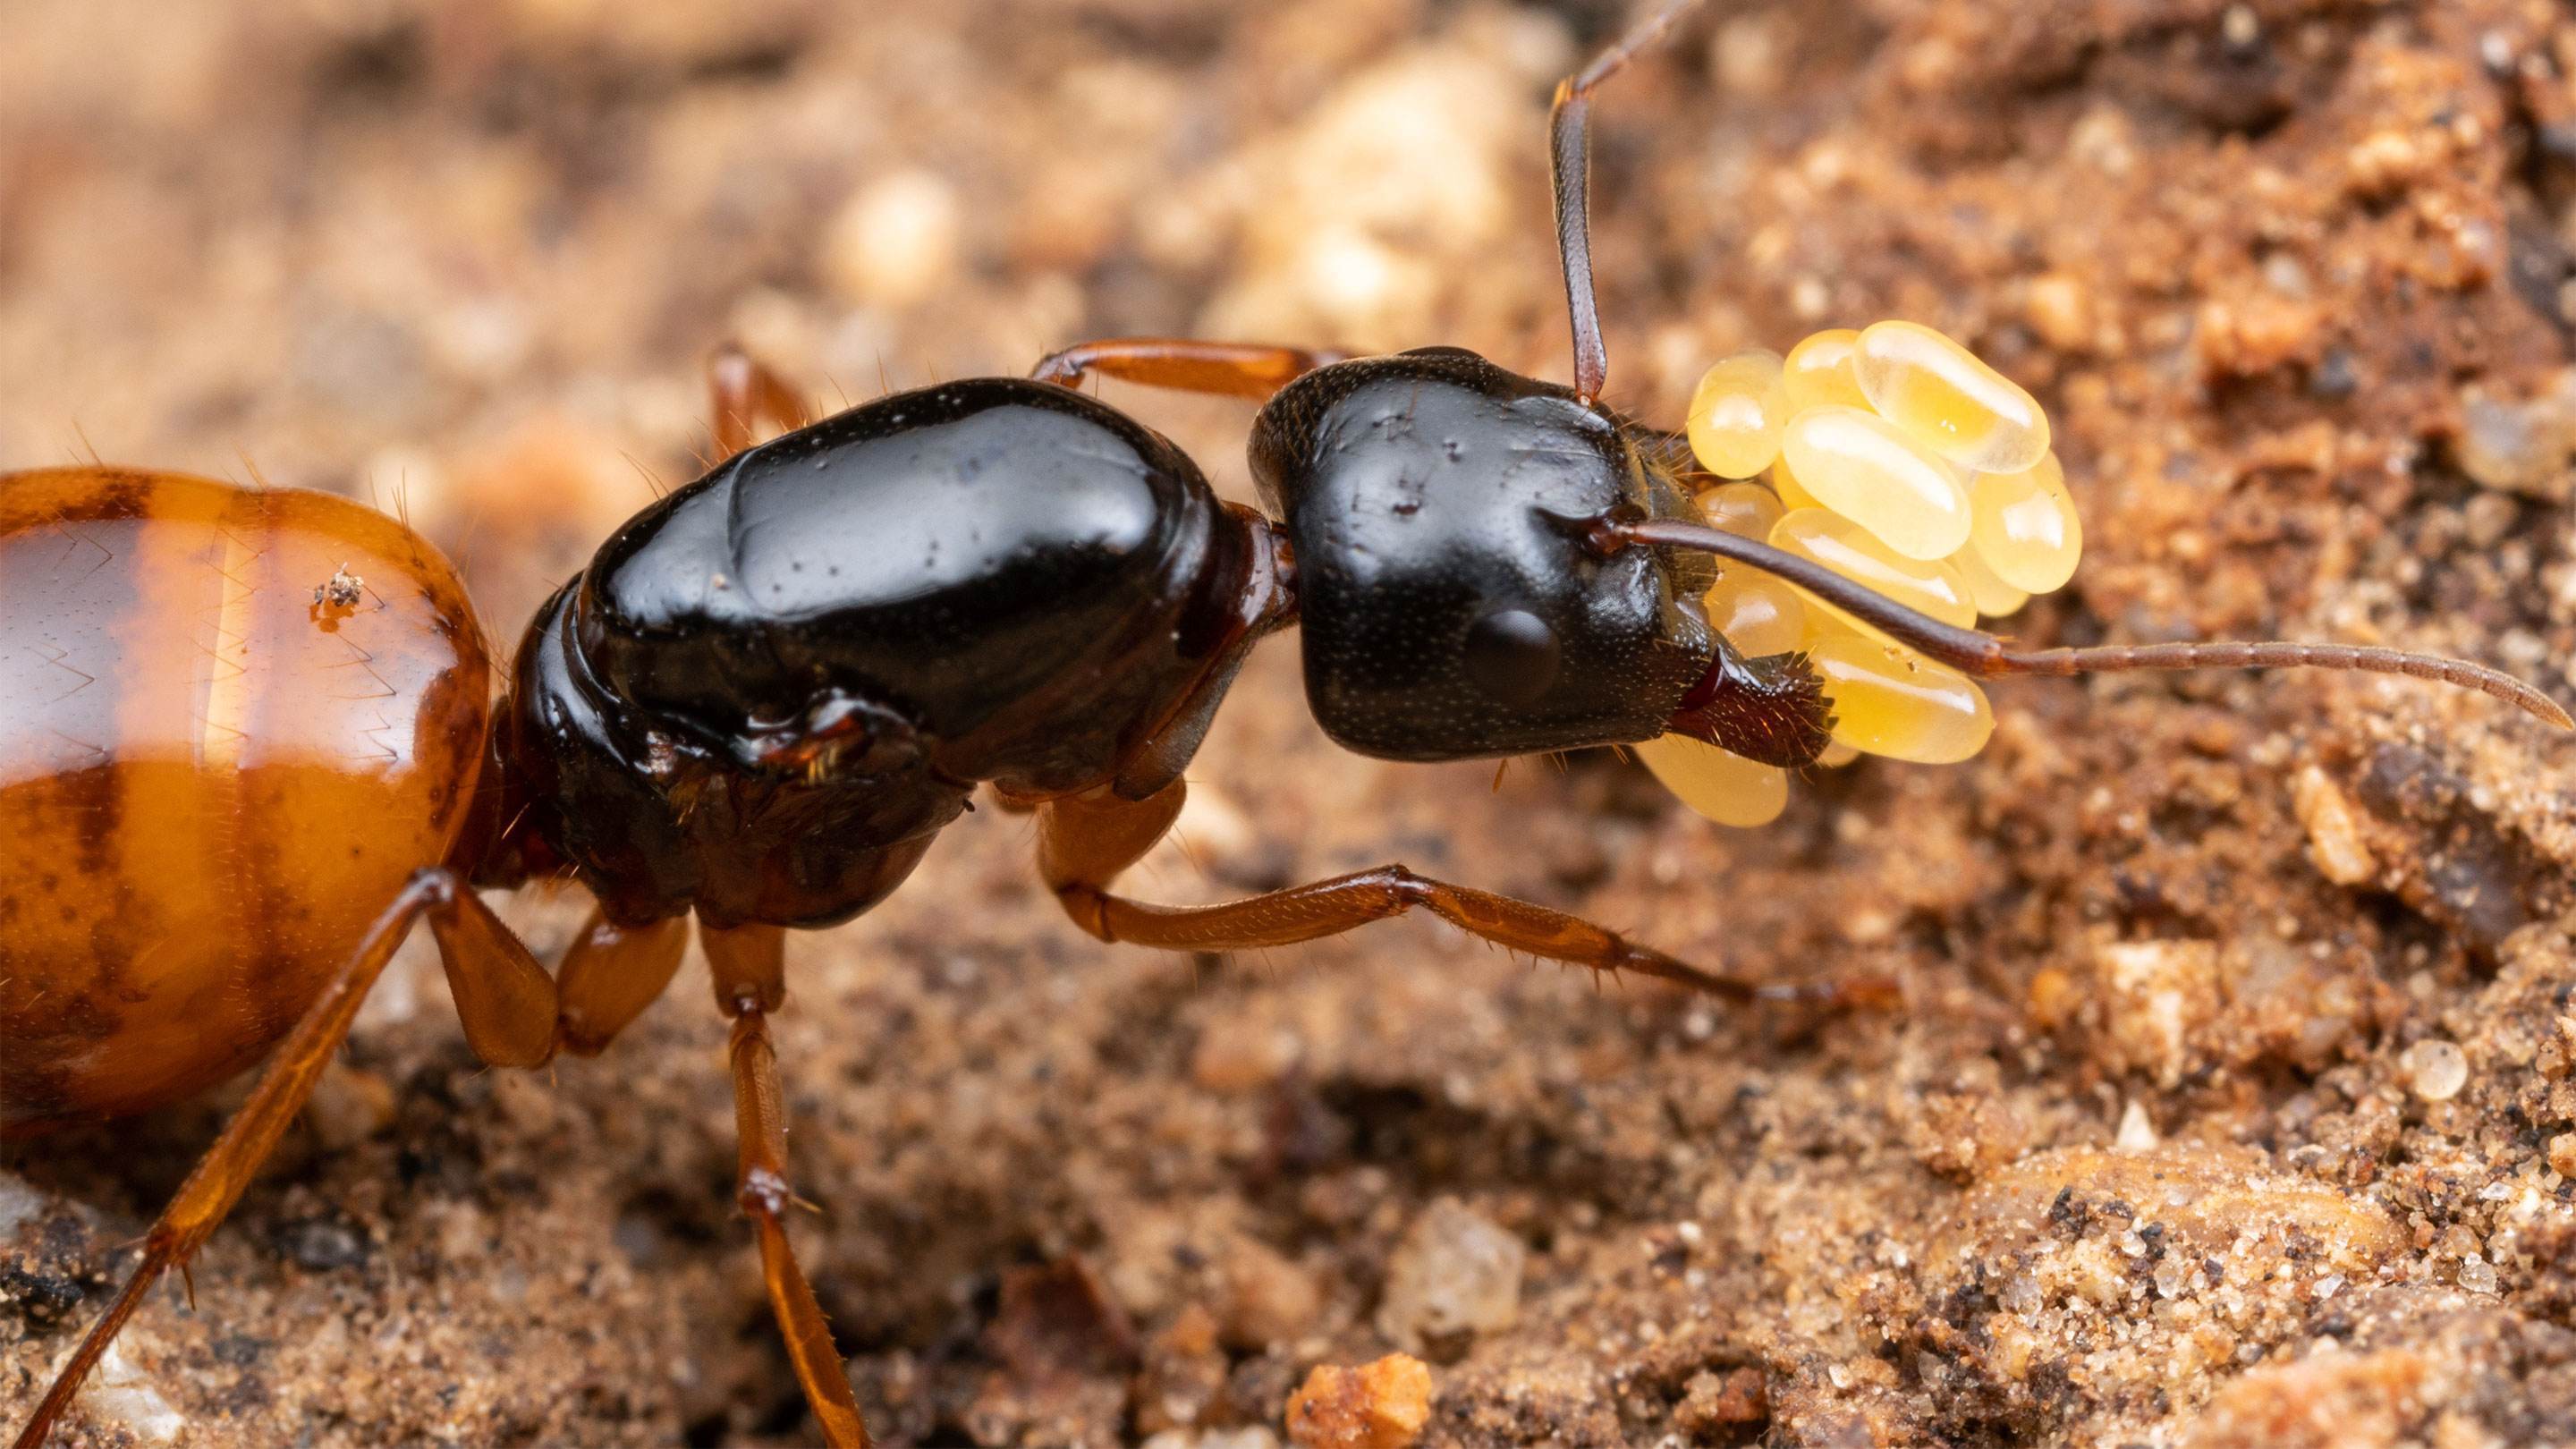 蚂蚁是地球上进化得最完美的生物,没有之一?为何会有这种说法?